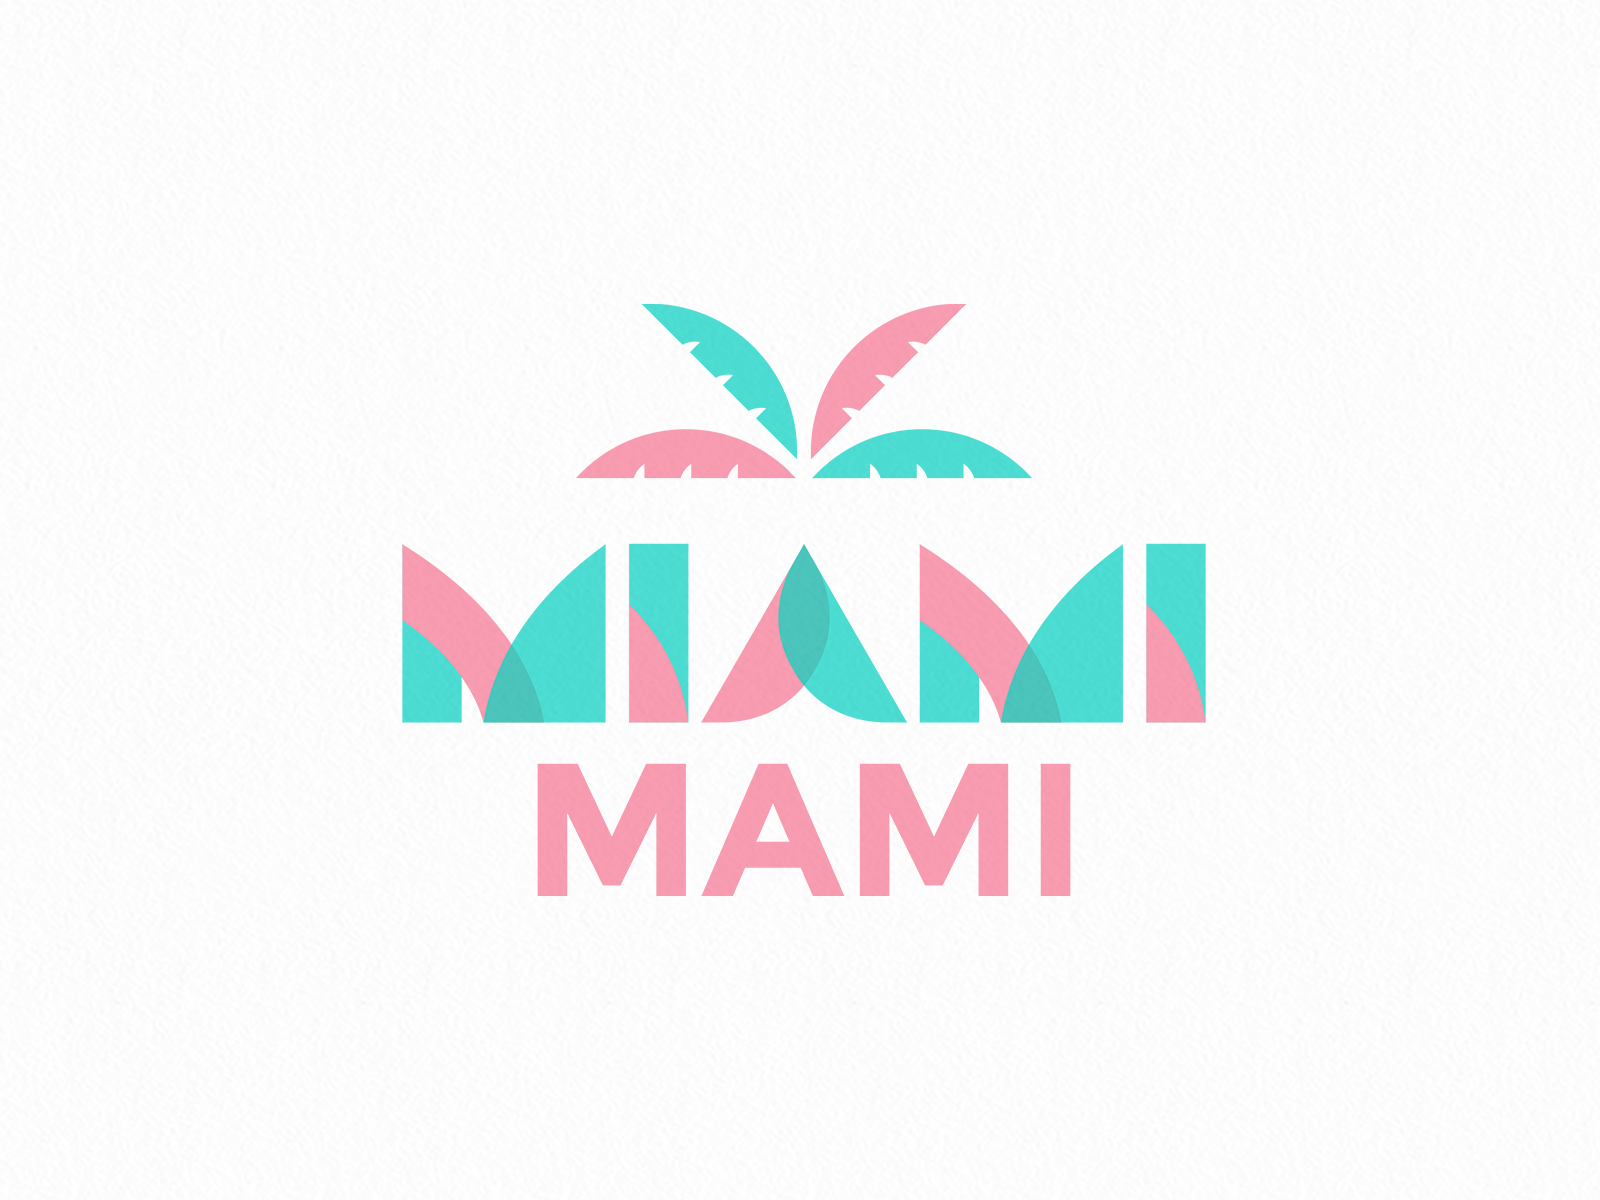 Miami Mami Logo by mariacecilia on Dribbble